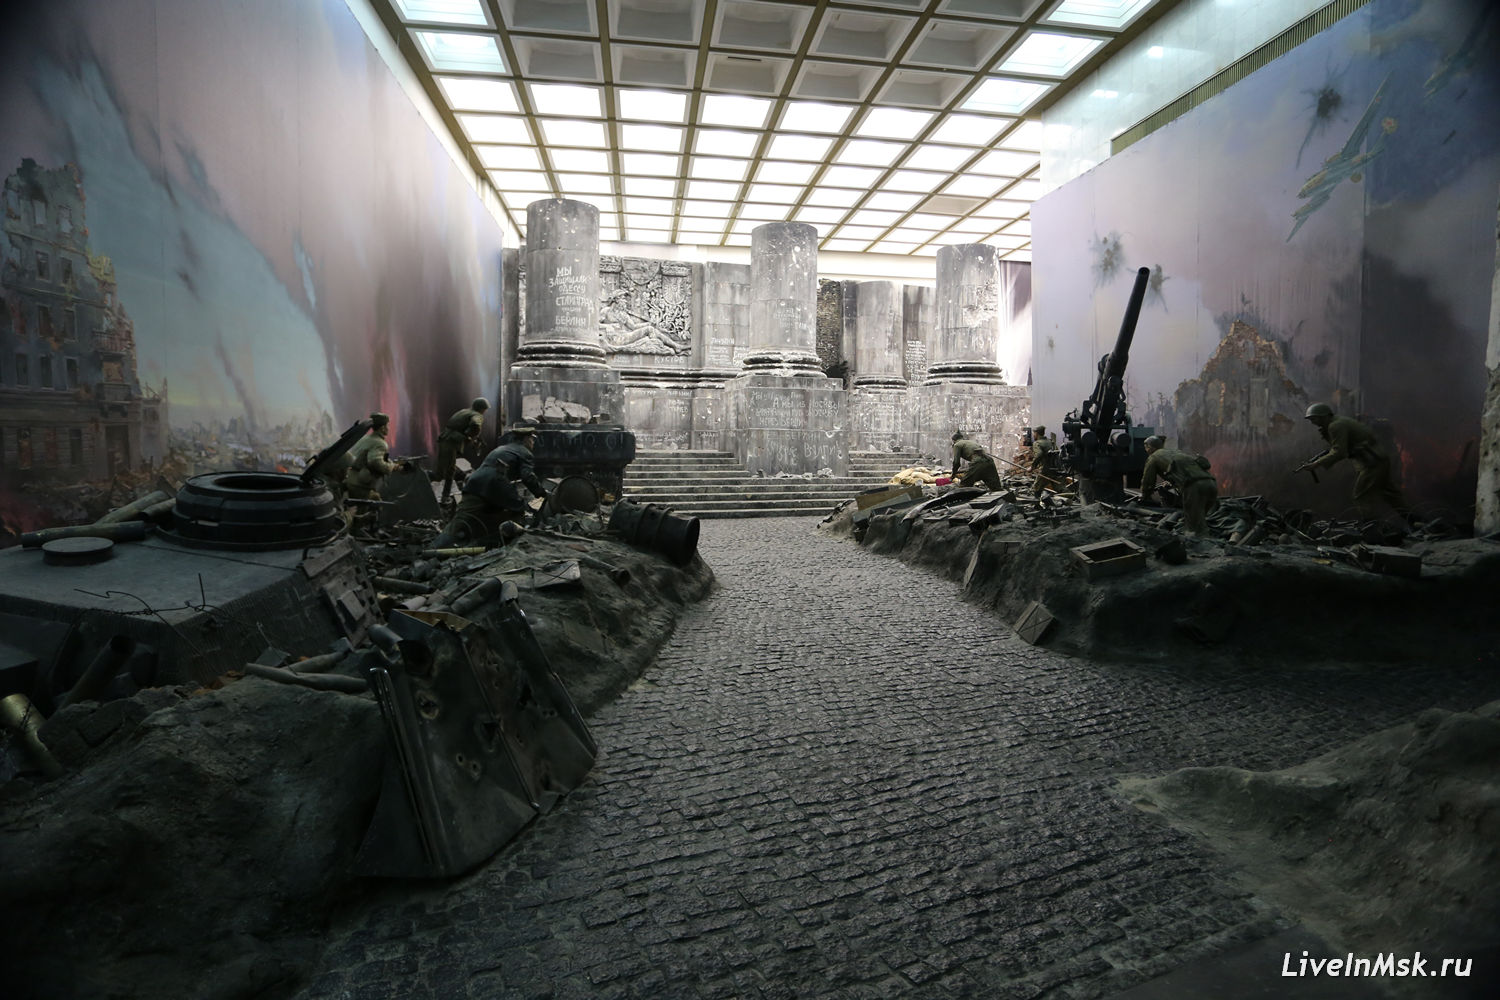 Музей Победы. Трехмерная панорама «Битва за Берлин»